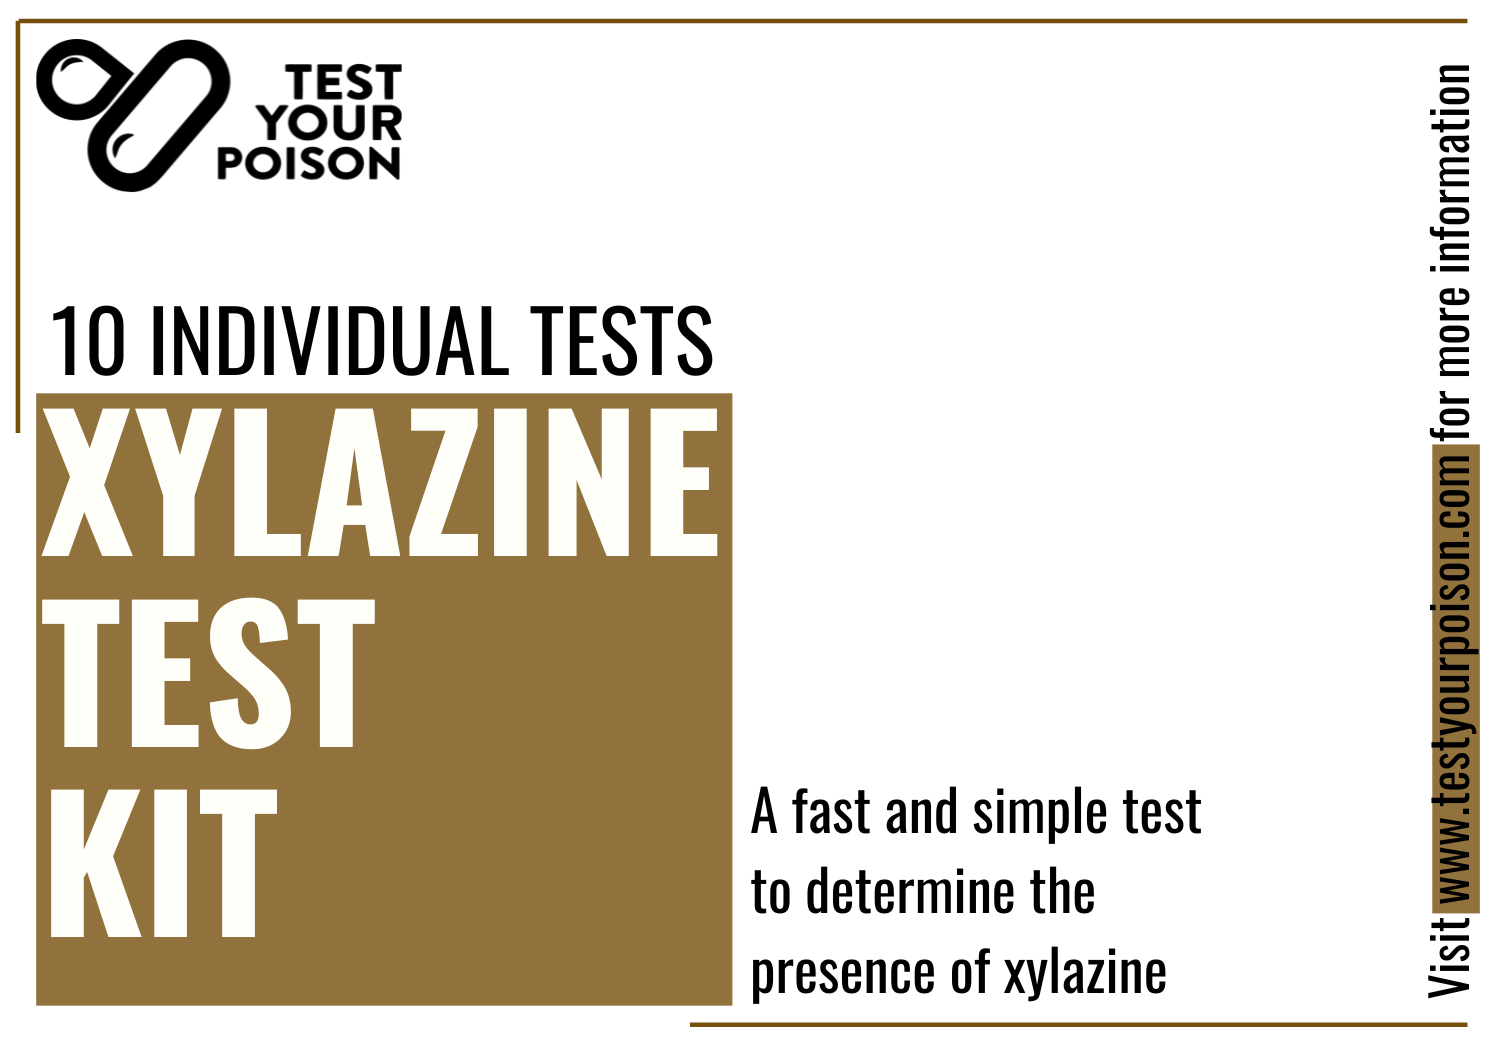 Xylazine Test Kit